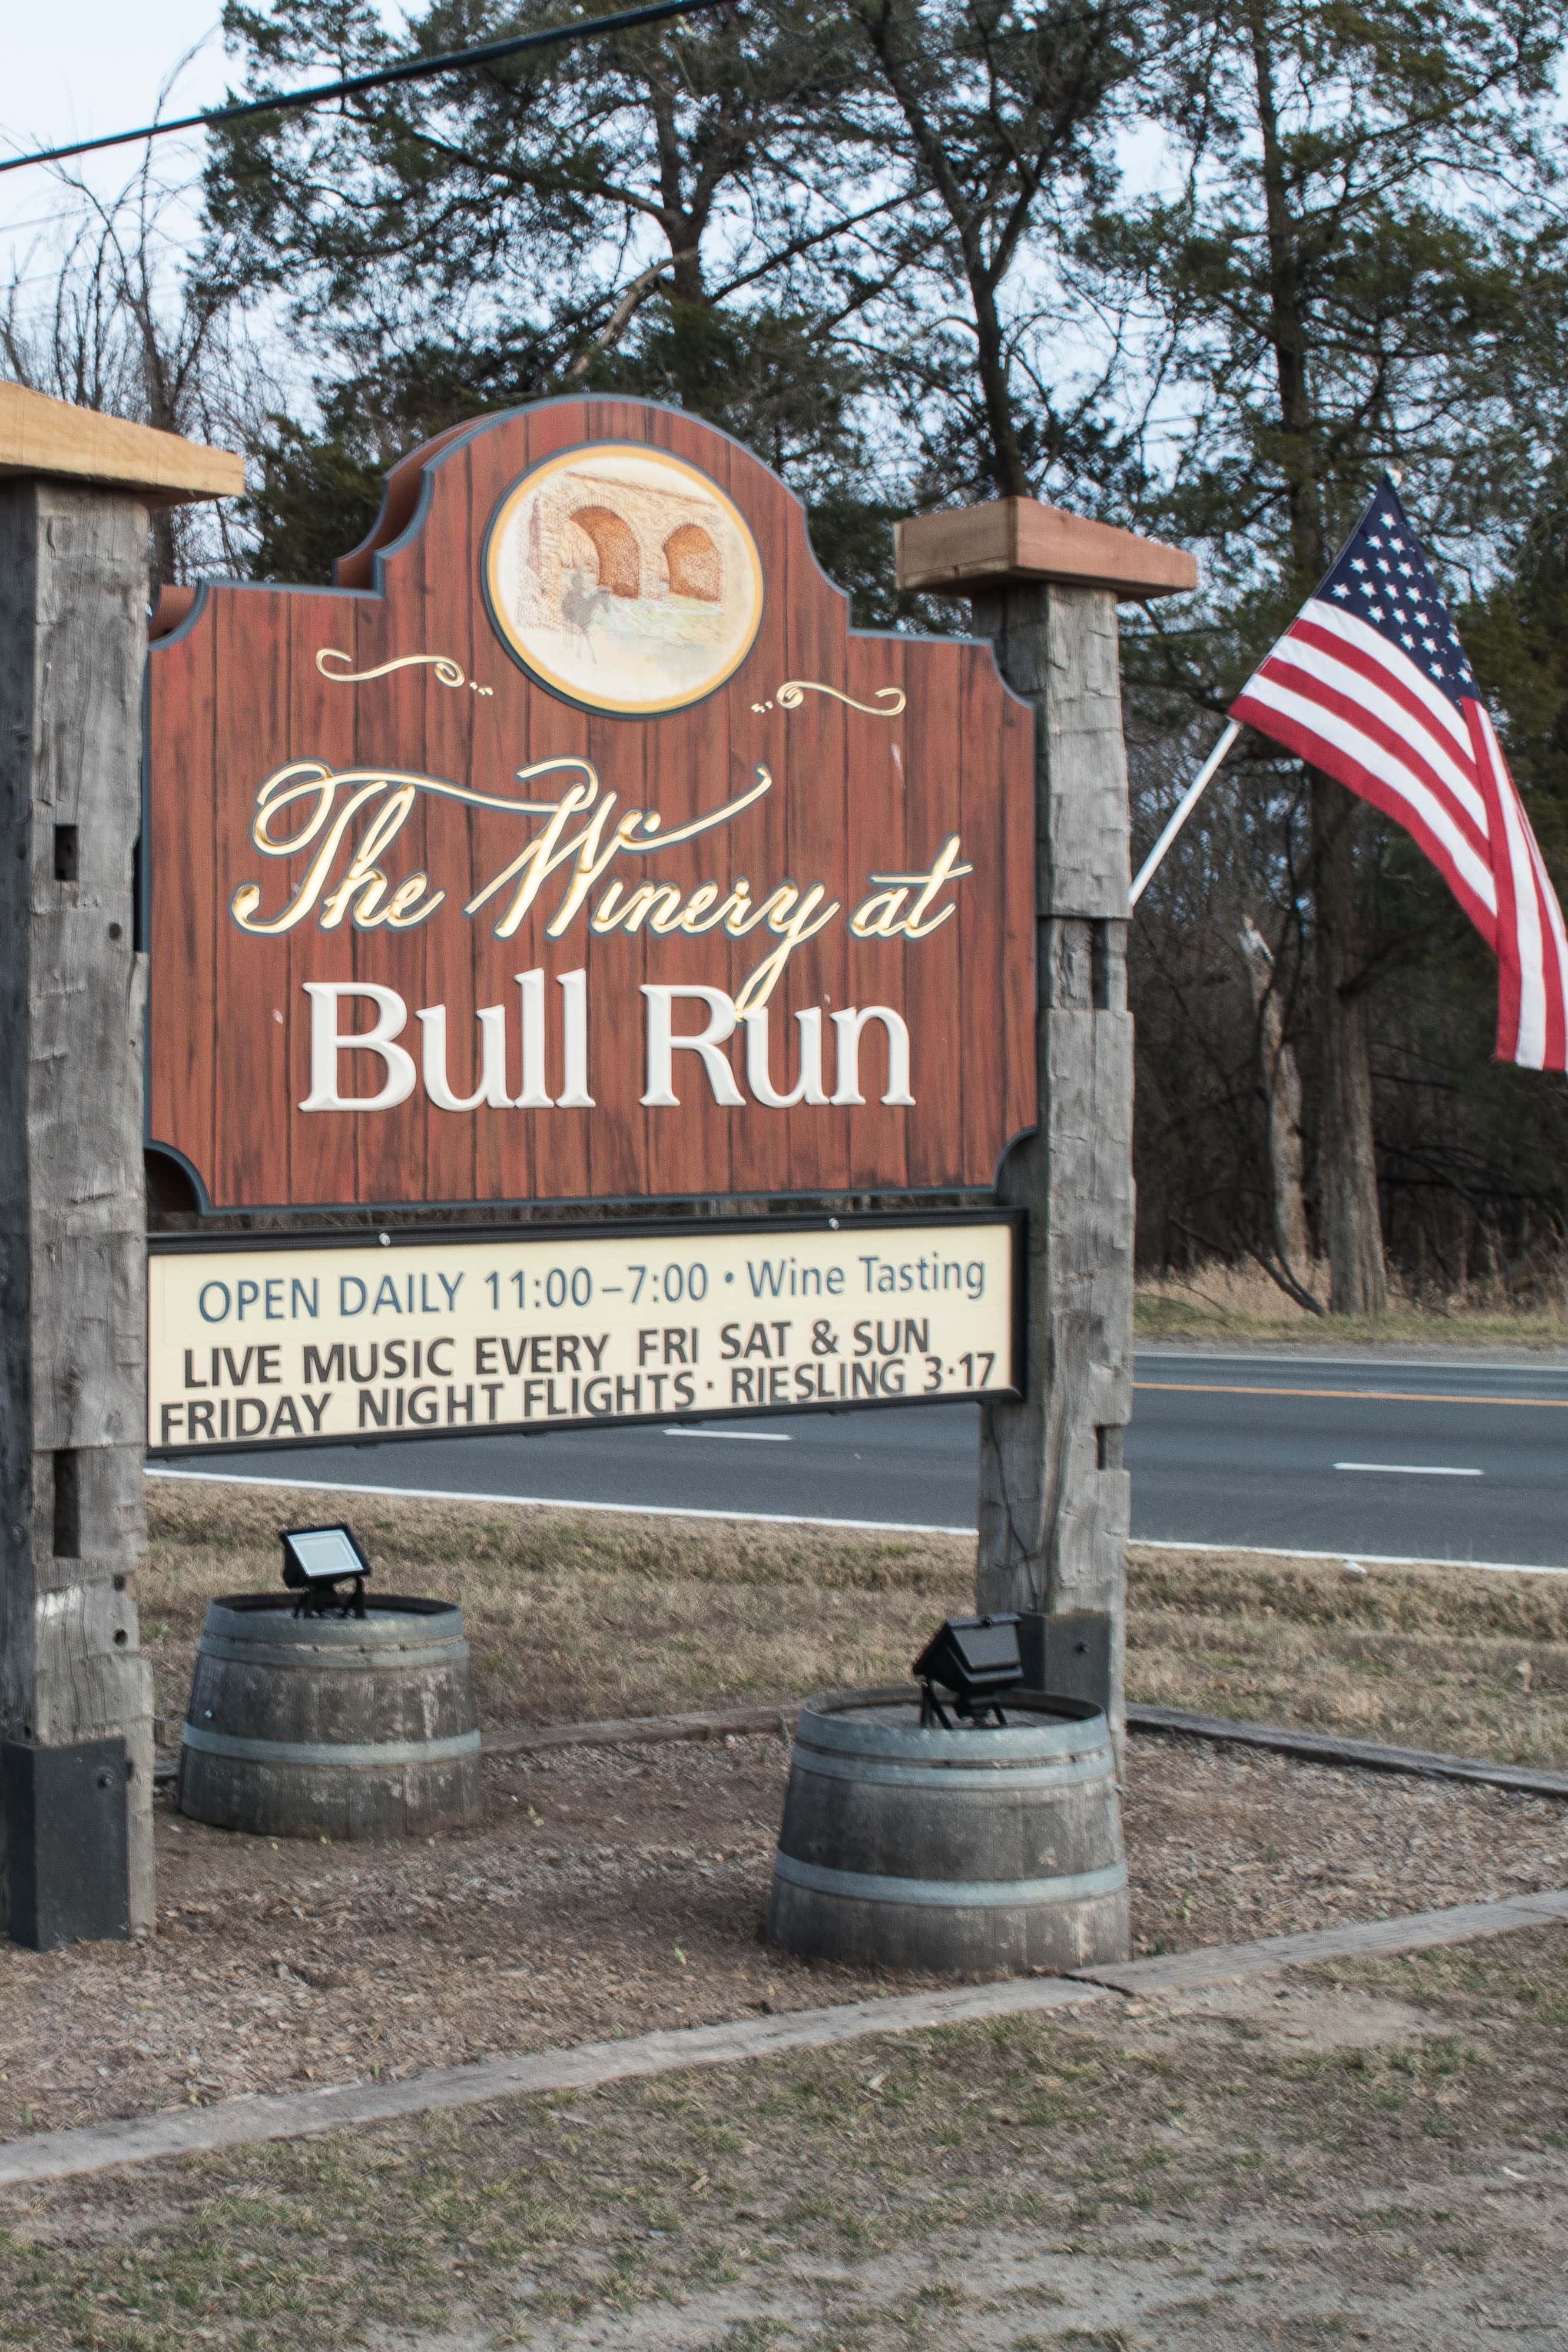 Bull Run Winery